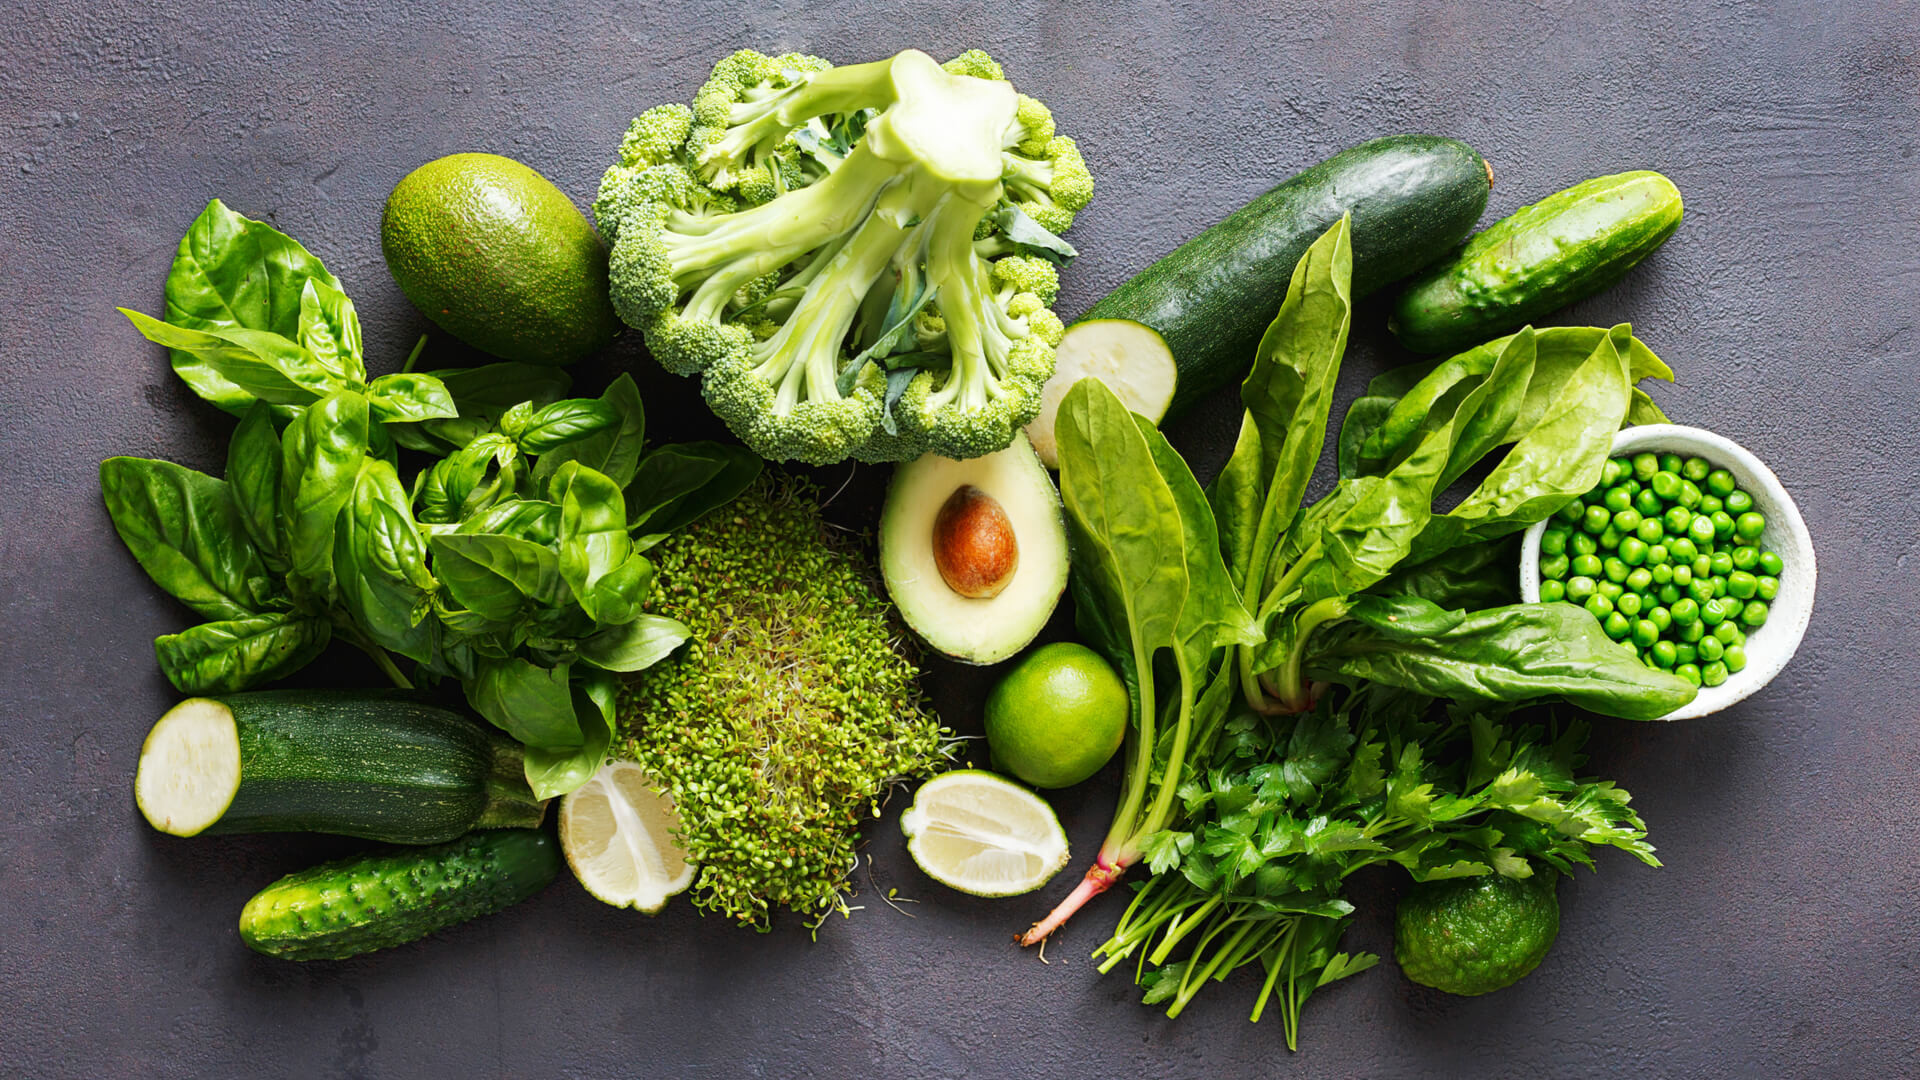 硝酸鹽致癌迷思！ 深綠色蔬菜含量高  吃對可降3成心血管風險？